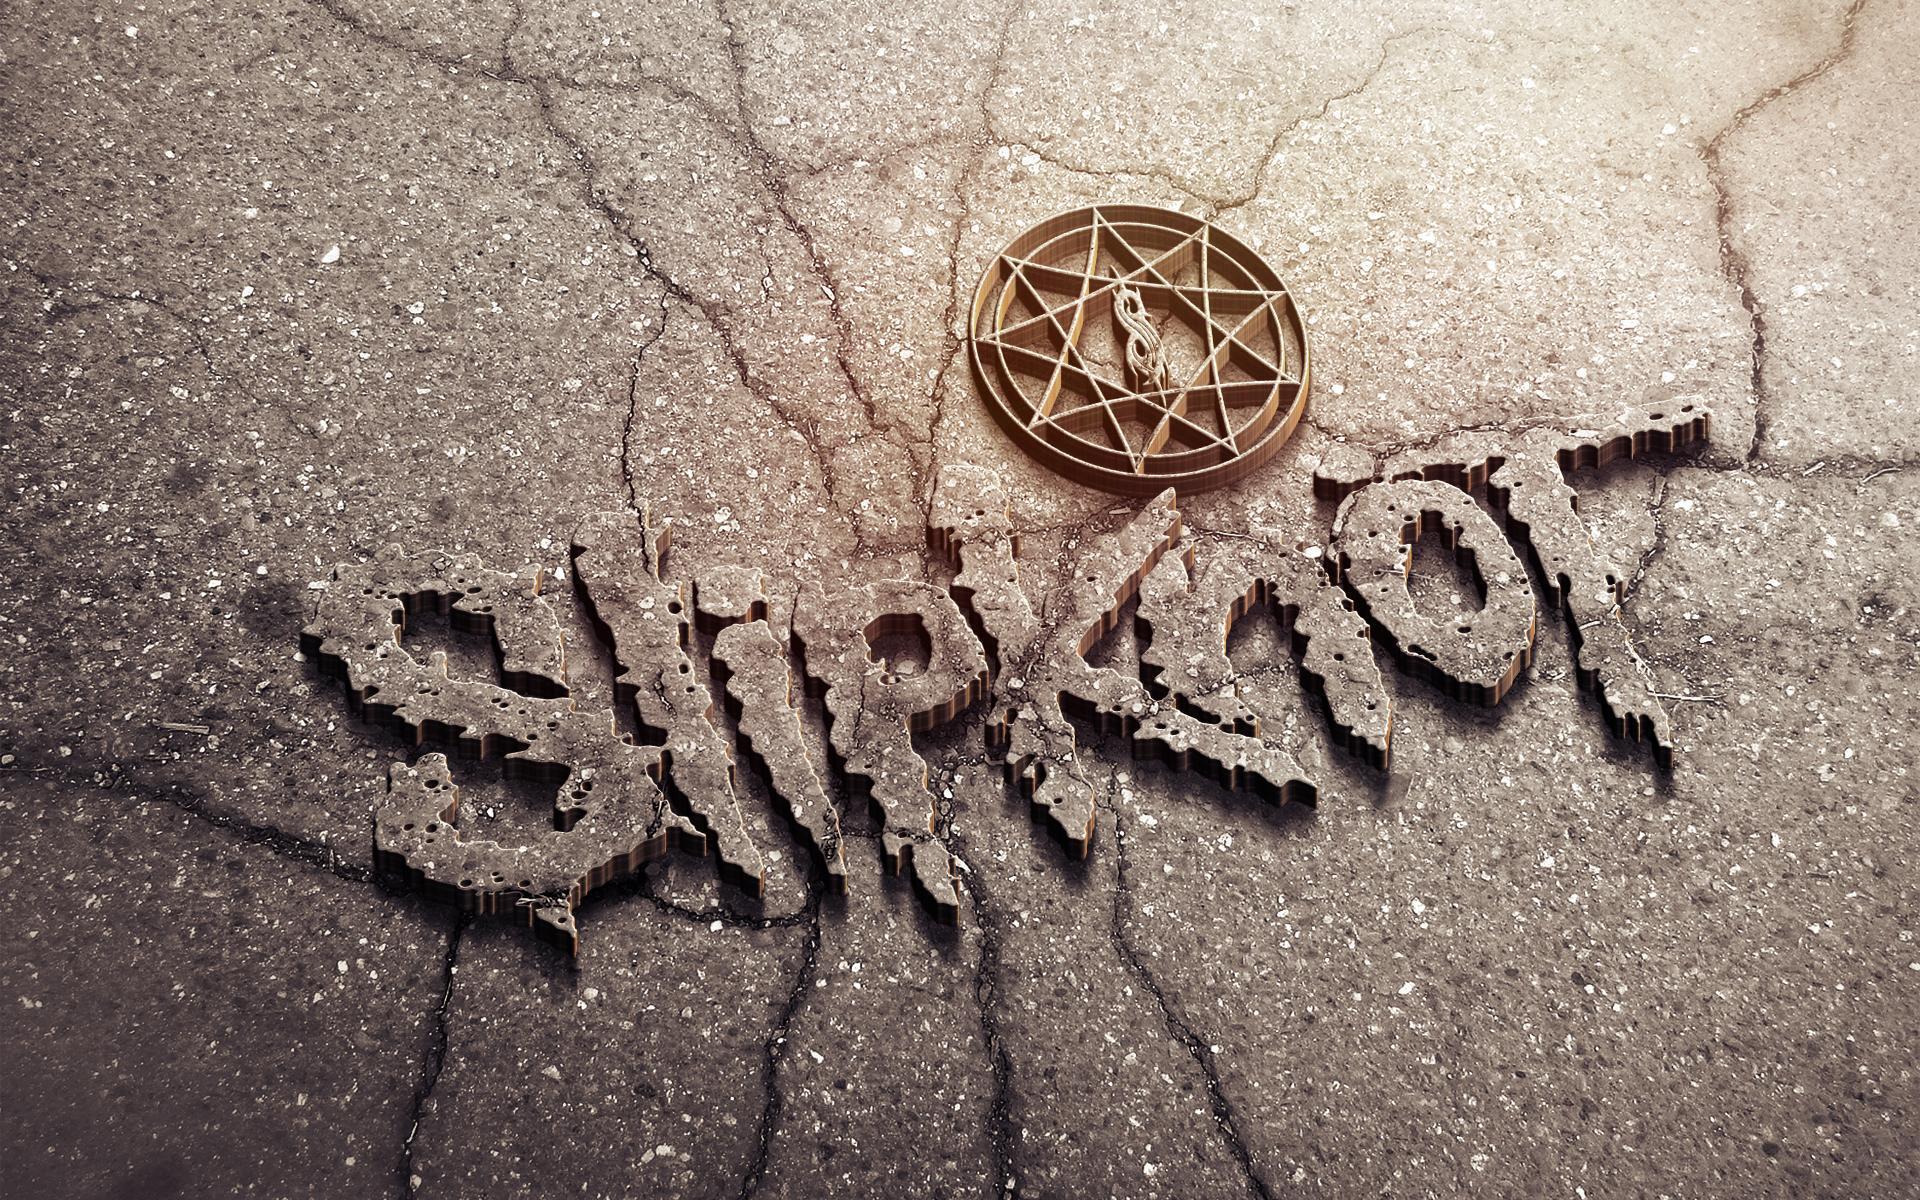 Slipknot Logo Wallpaper